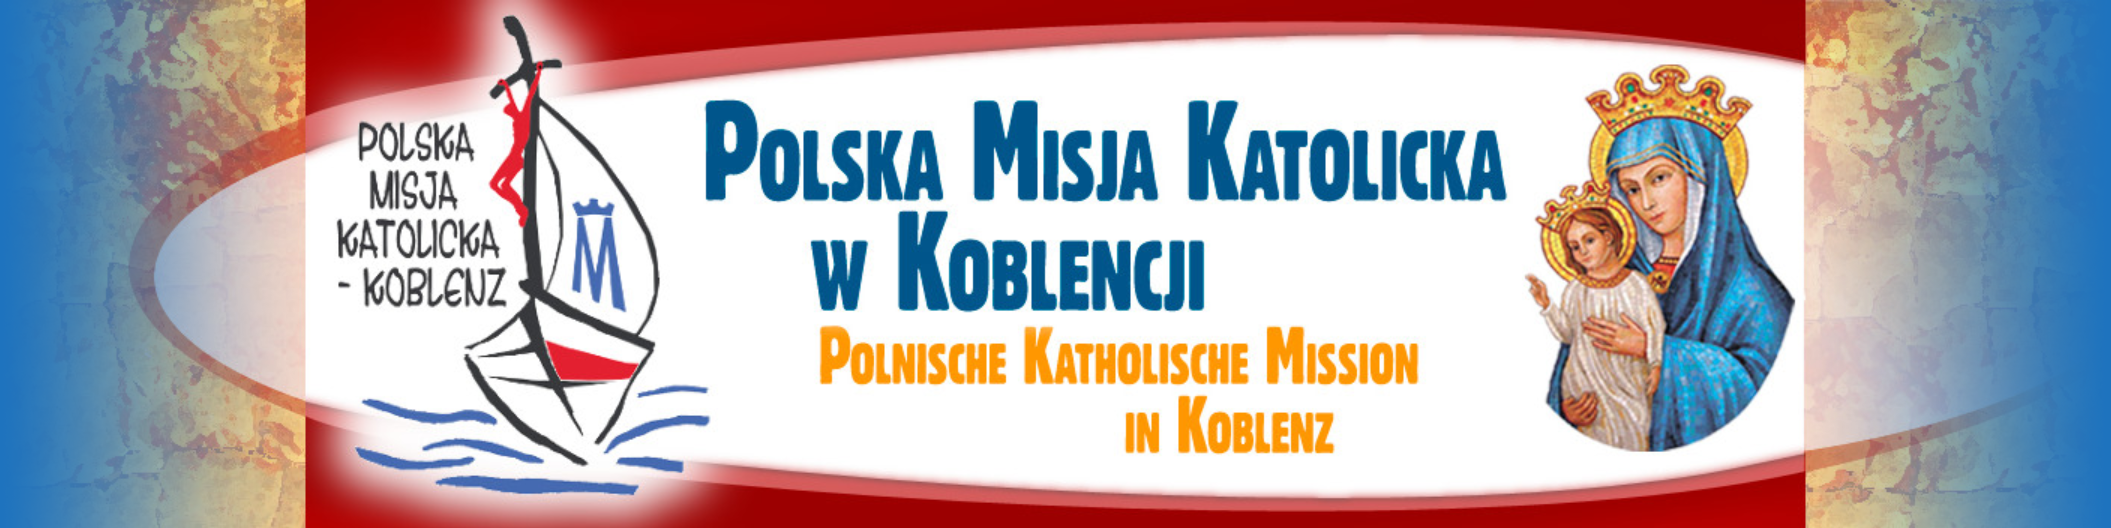 Polska Misja Katolicka – Koblenz